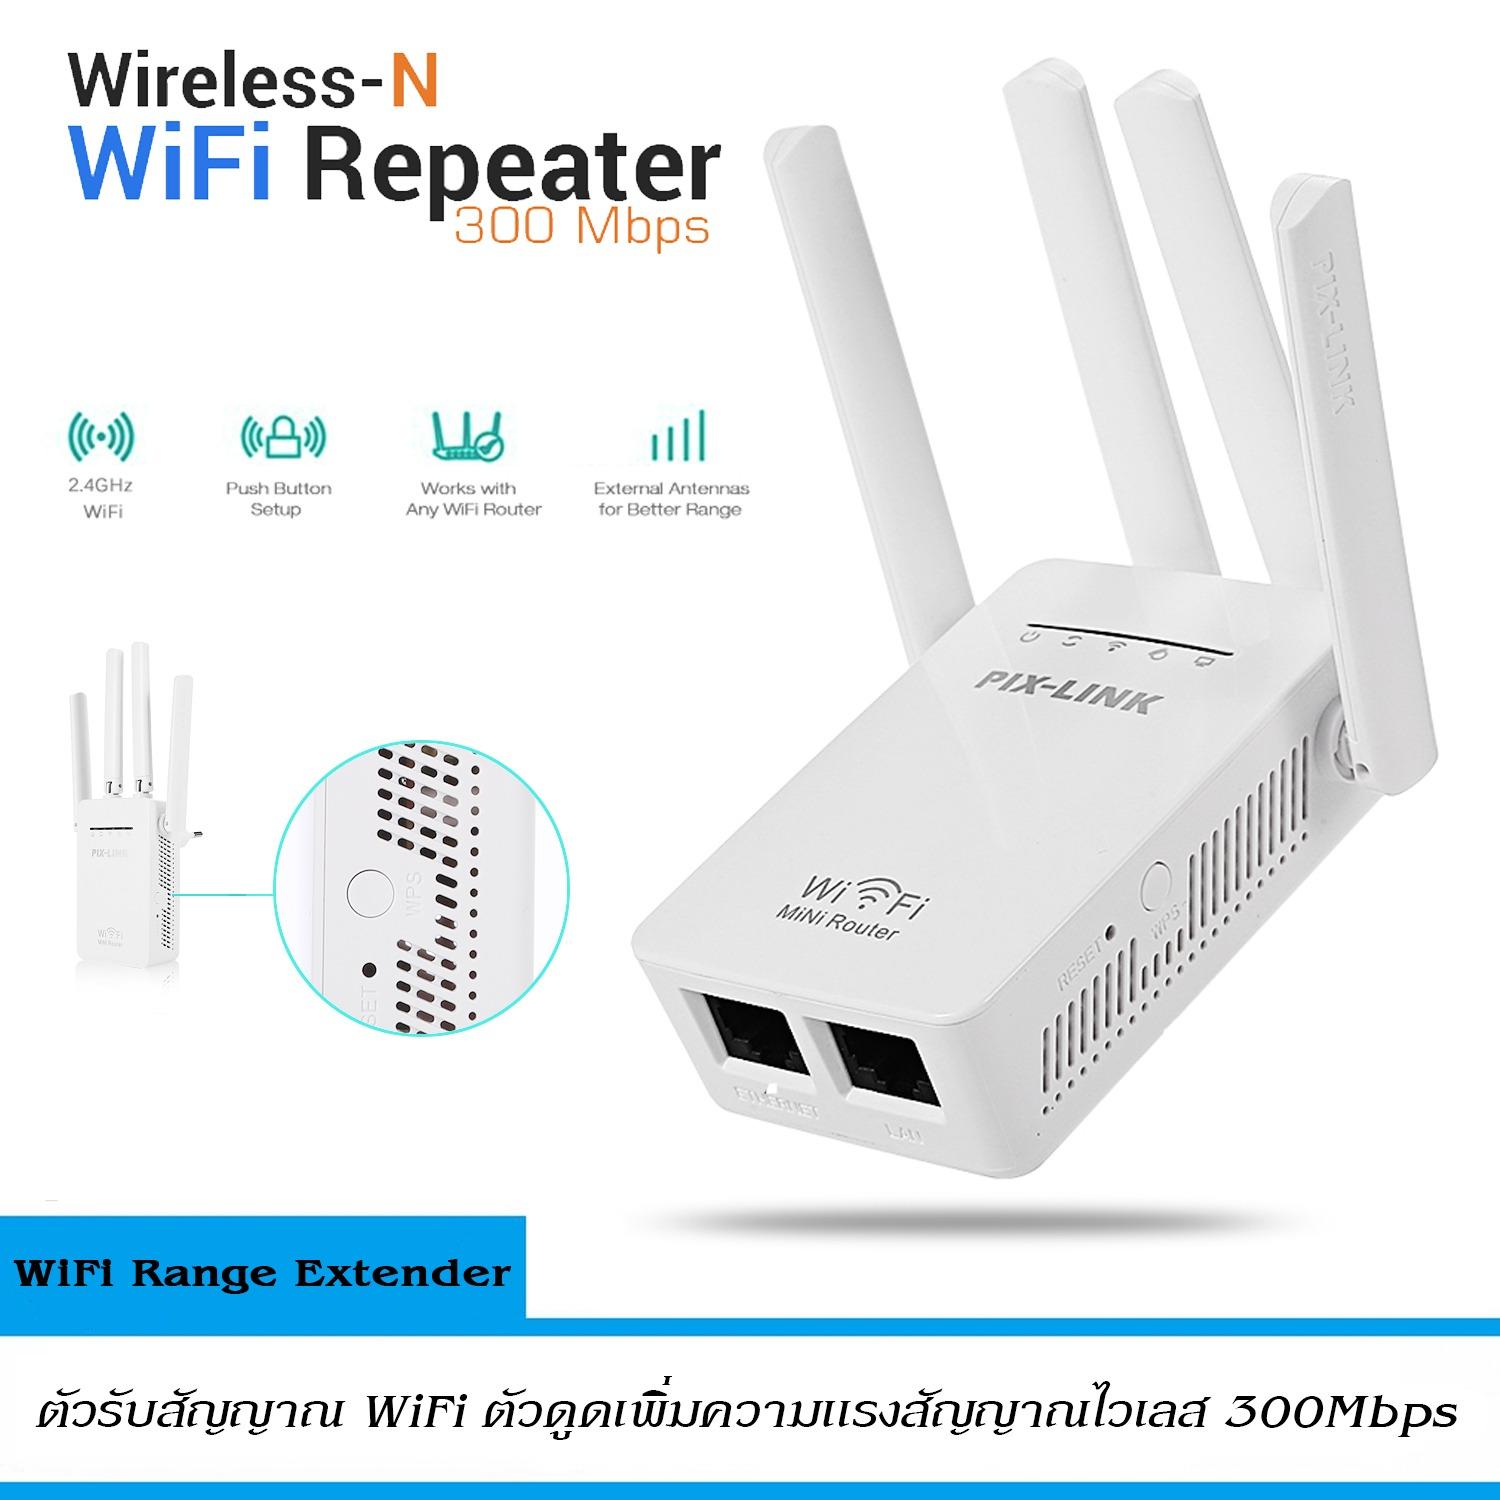 ใหม่ล่าสุด ปี2018! ของแท้! มีรับประกัน!ตัวรับสัญญาณ WiFi ตัวดูดเพิ่มความแรงสัญญาณไวเลส 300Mbps พร้อมความแรงเพิ่ม 4 เสาสัญญาณ WiFi Range Extender Wireless Router Repeater AP